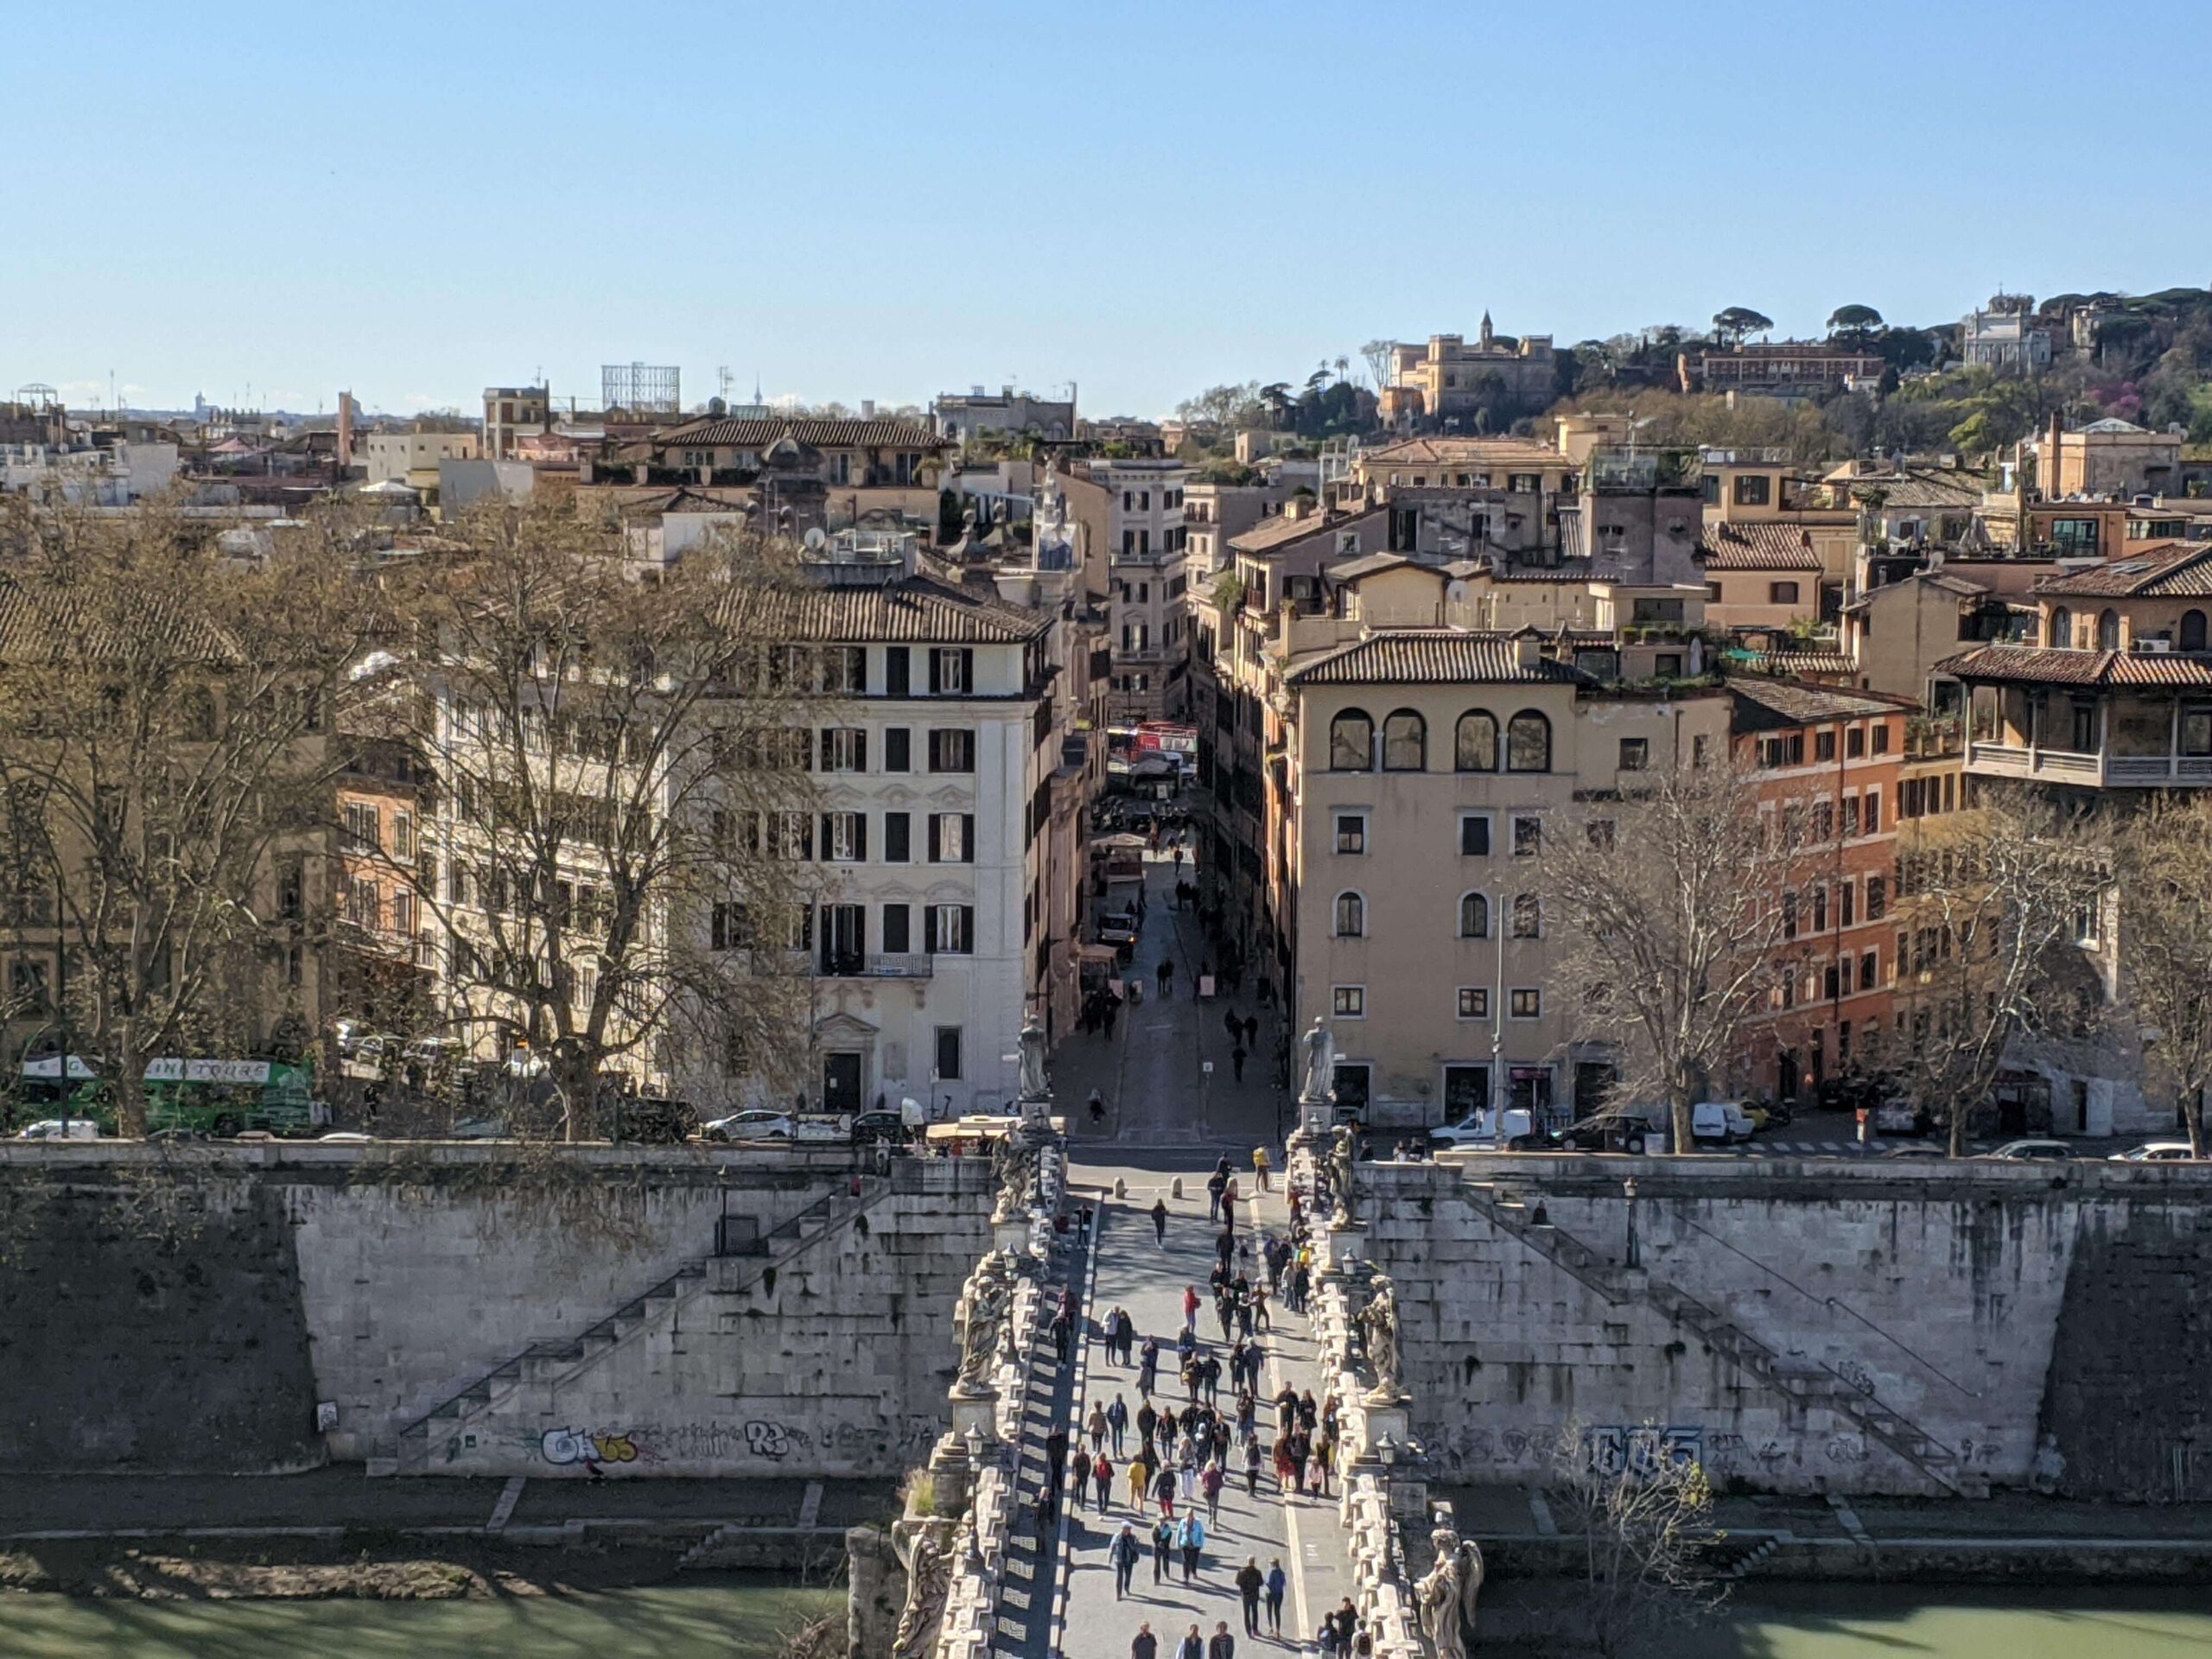 Perspectiva mais próxima da Ponte Sant'Angelo cheia de estátuas, com a cidade de Roma ao fundo, sob uma iluminação clara.